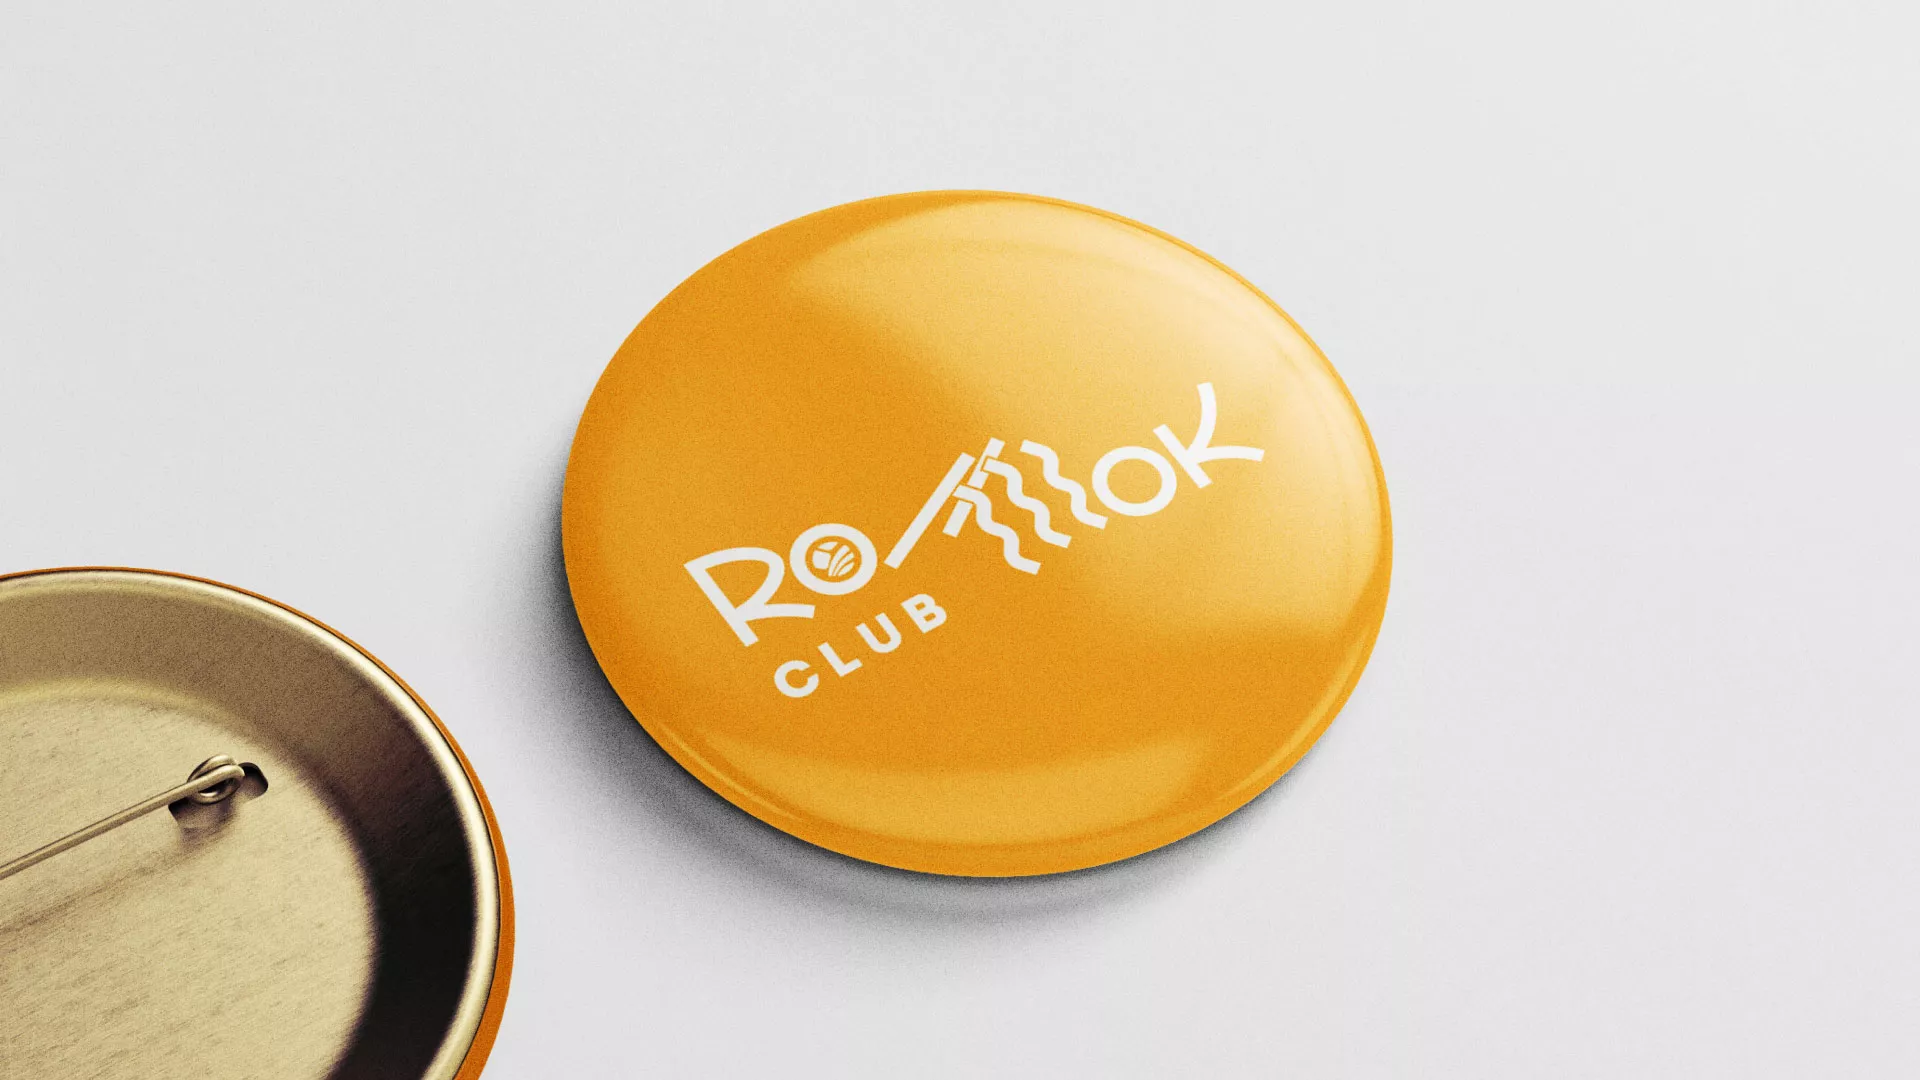 Создание логотипа суши-бара «Roll Wok Club» в Узловой